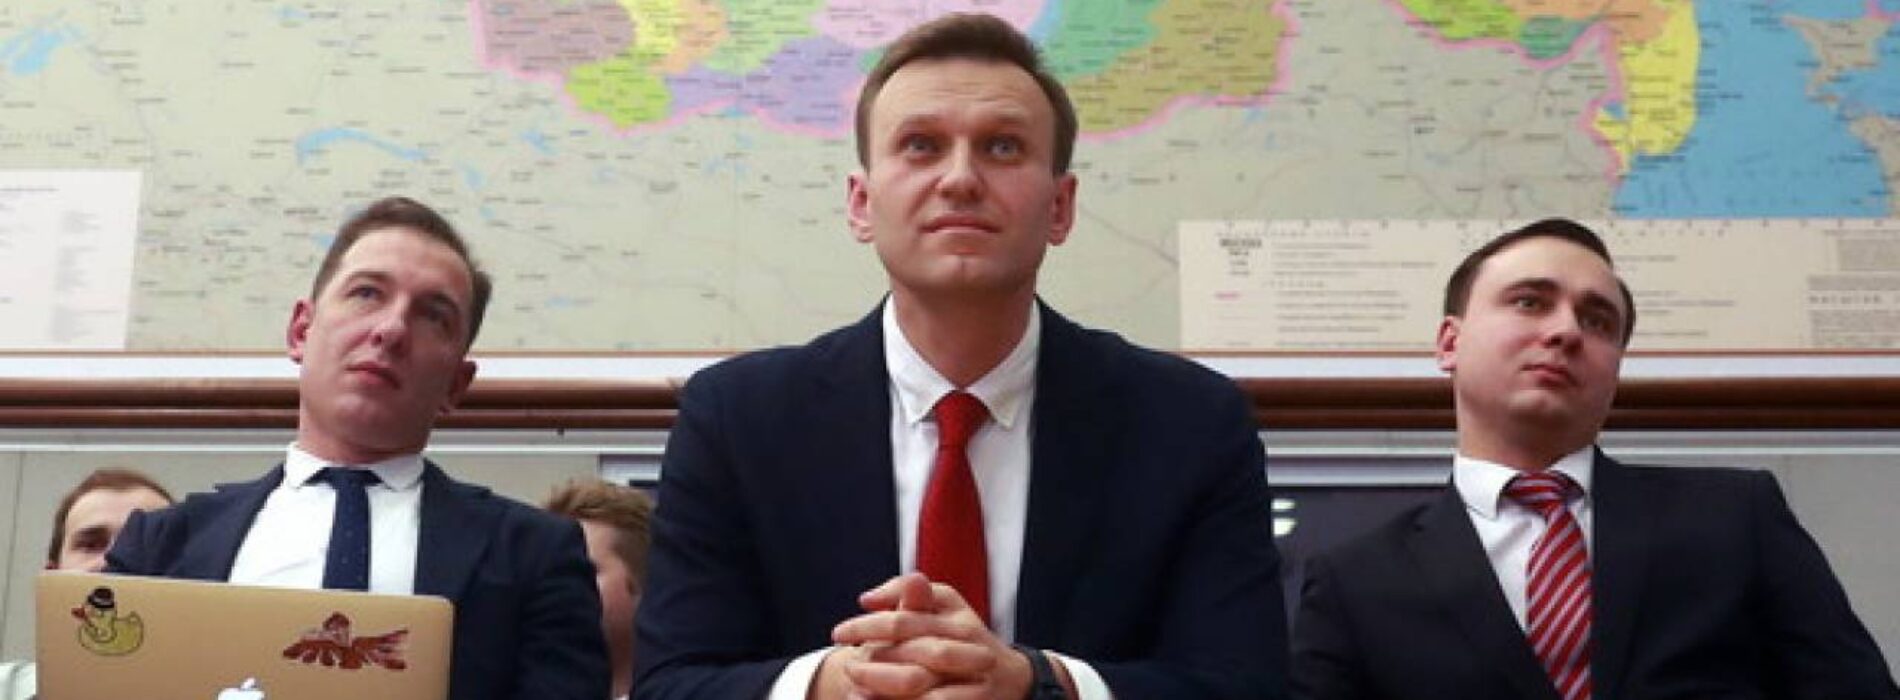 Европейские СМИ назвали имена виновных в отравлении Навального